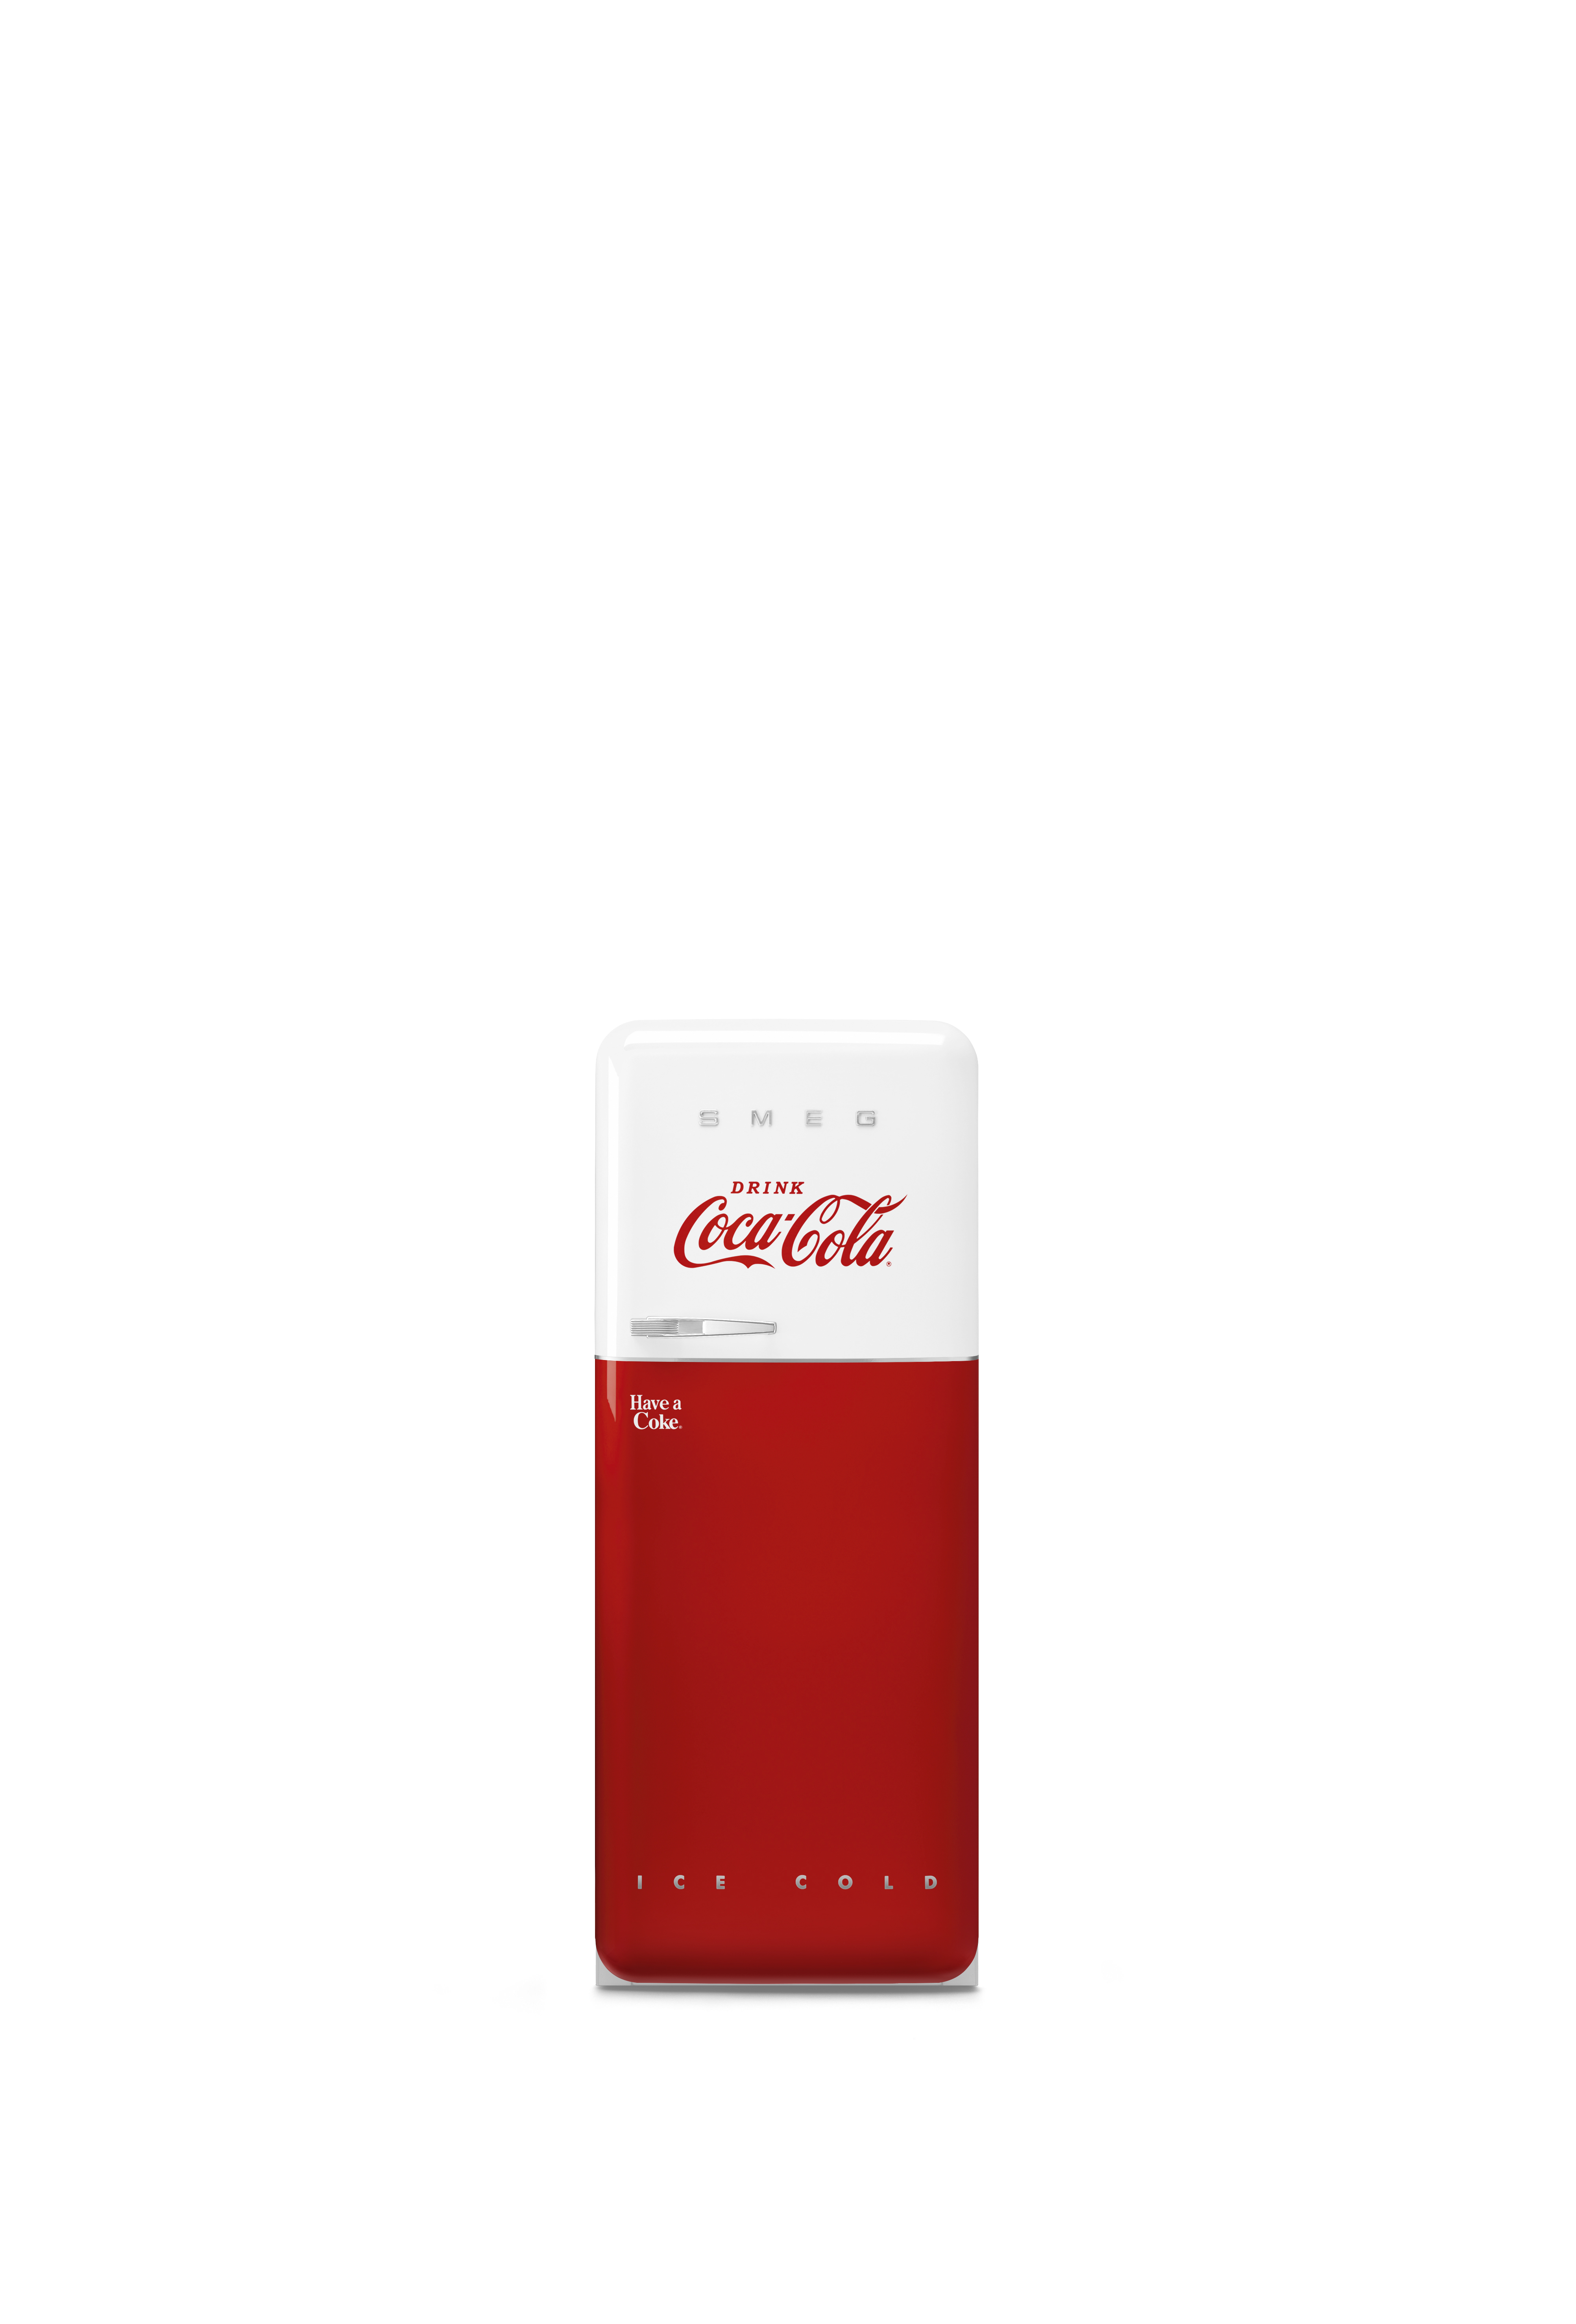 Smeg & Coca Cola 